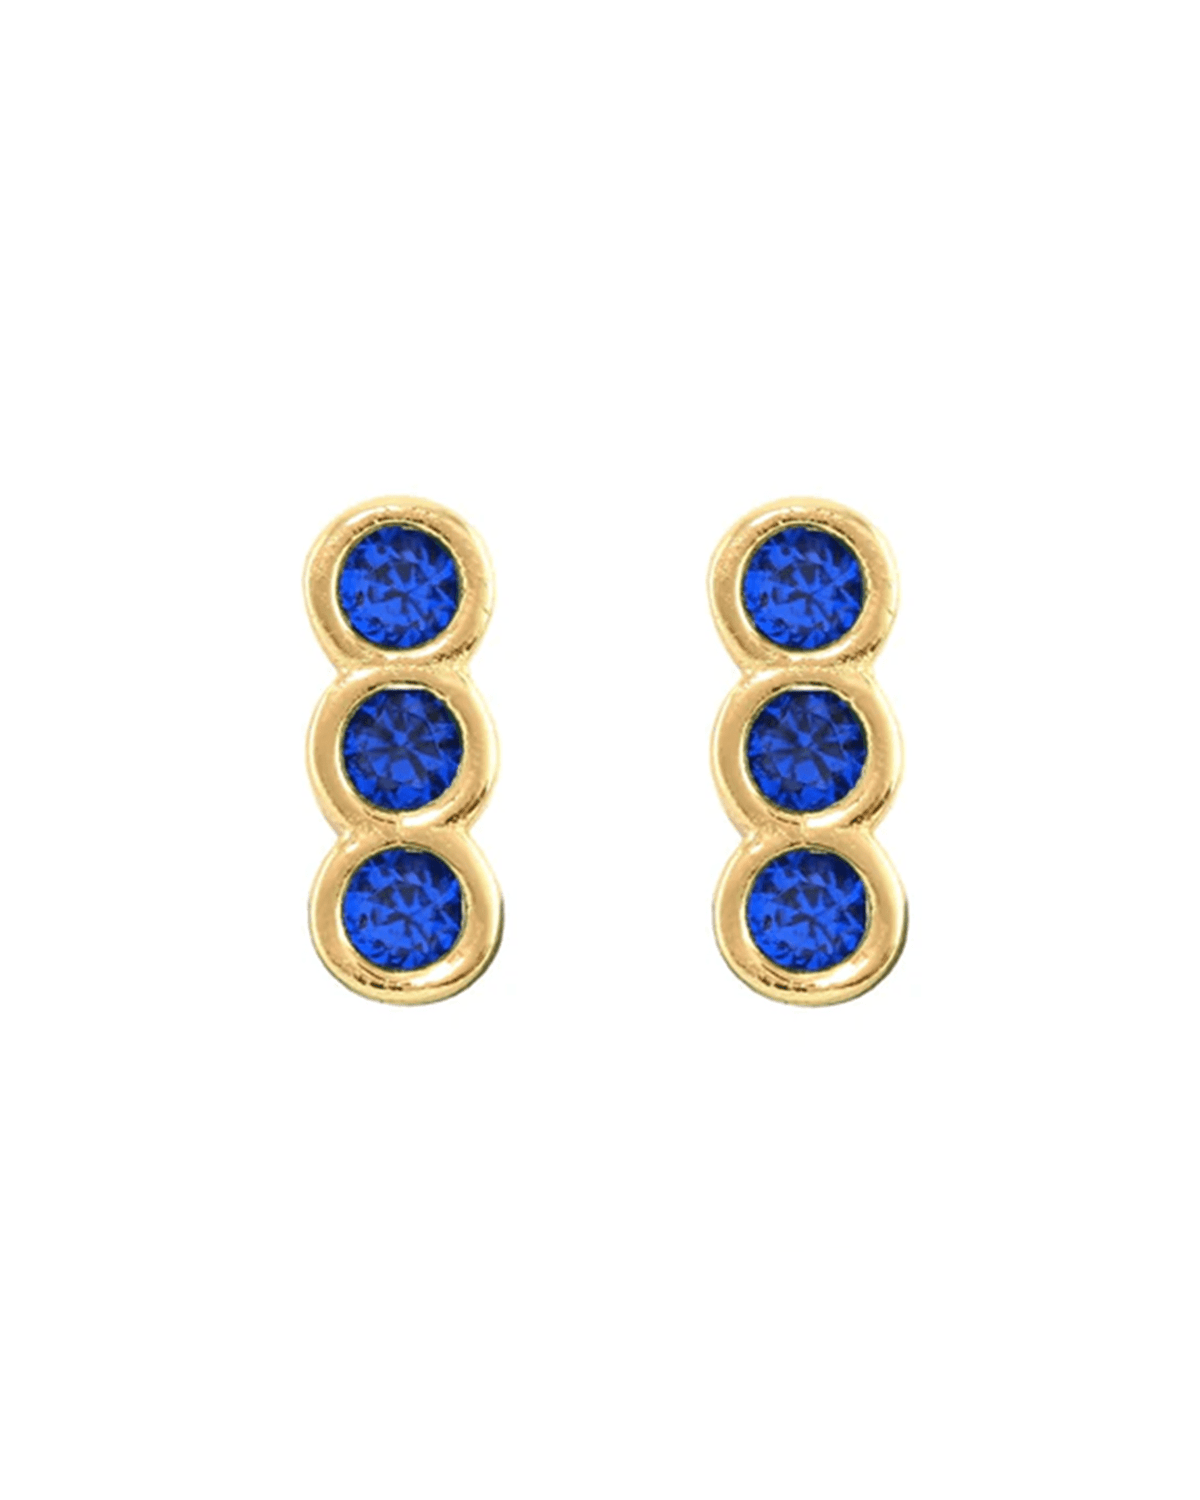 Kris Nations Jewelry Gold Triple Bezel Crystal Stud Earrings in Gold & Sapphire